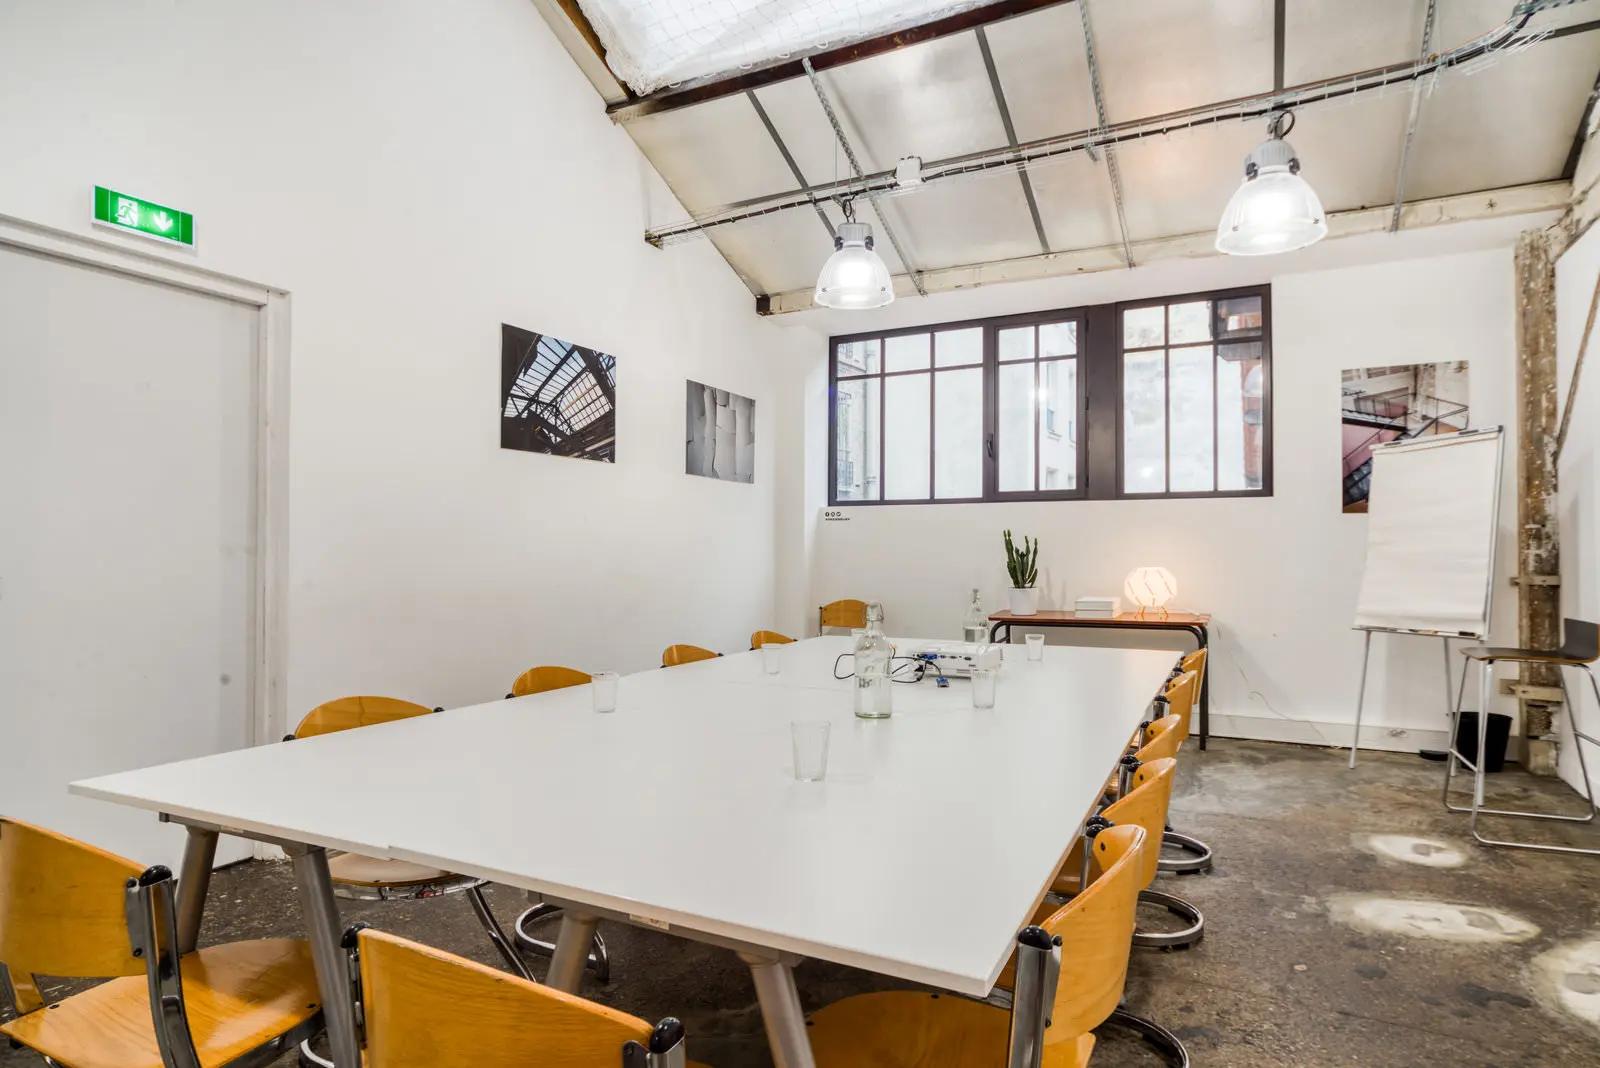 Meeting room in Industrial-style space - 1